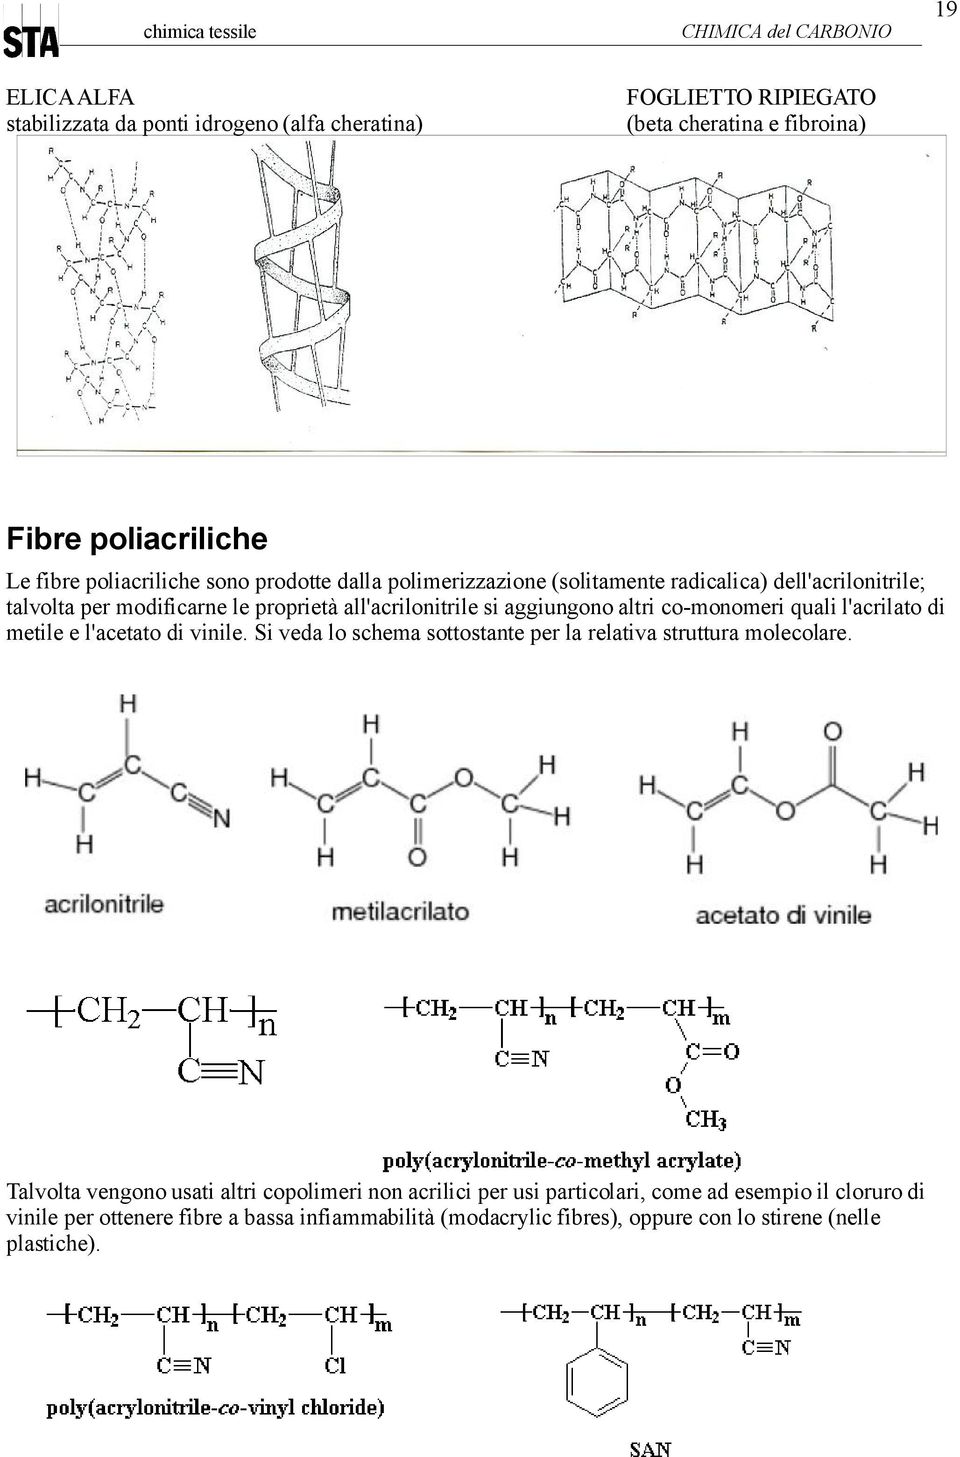 co-monomeri quali l'acrilato di metile e l'acetato di vinile. Si veda lo schema sottostante per la relativa struttura molecolare.